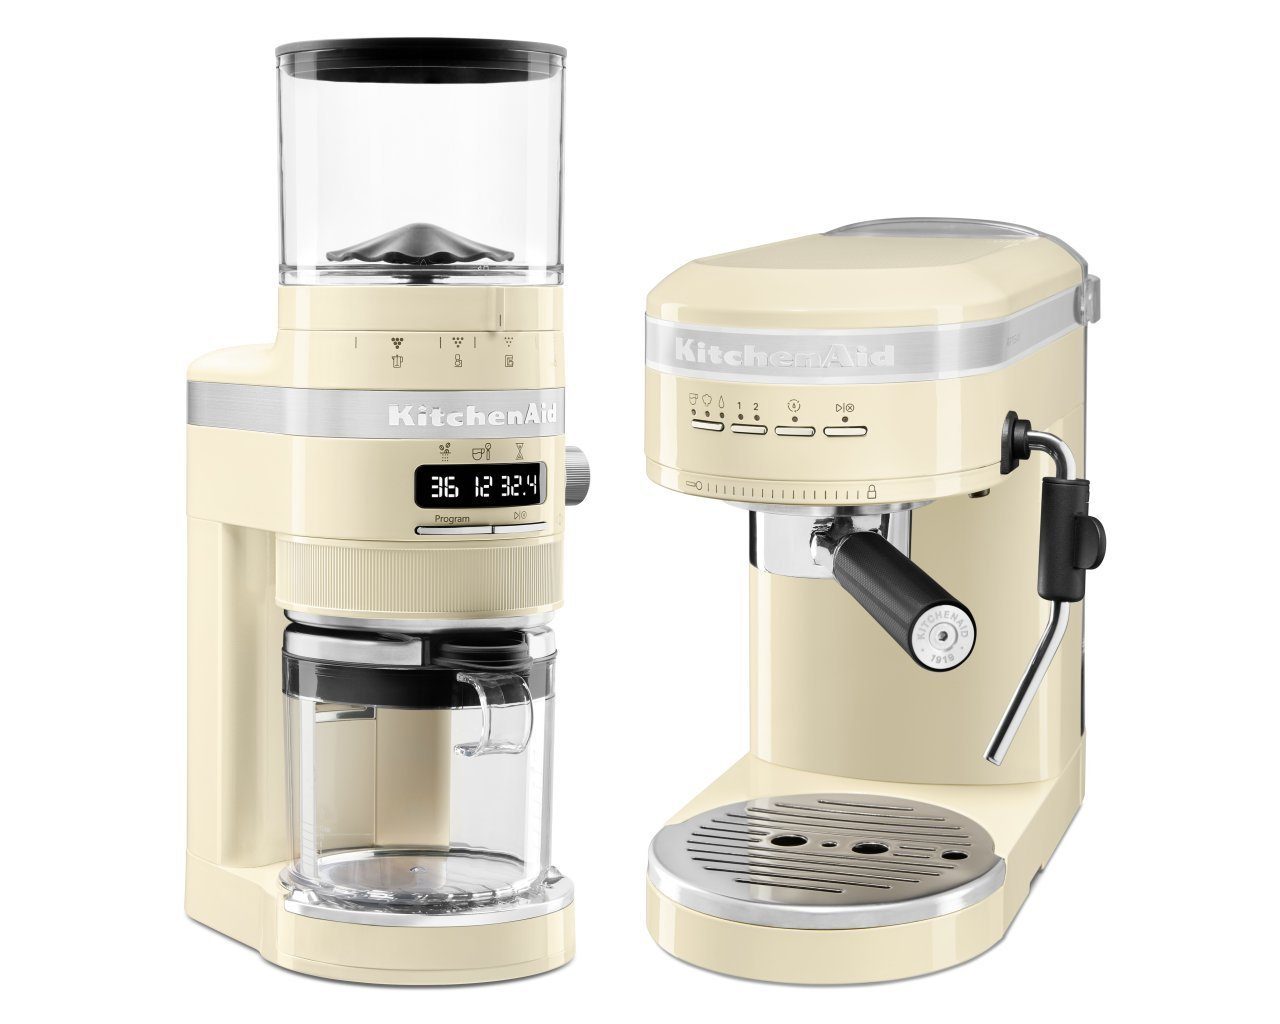 KitchenAid Crème Espresso-Set KitchenAid Espressomaschine